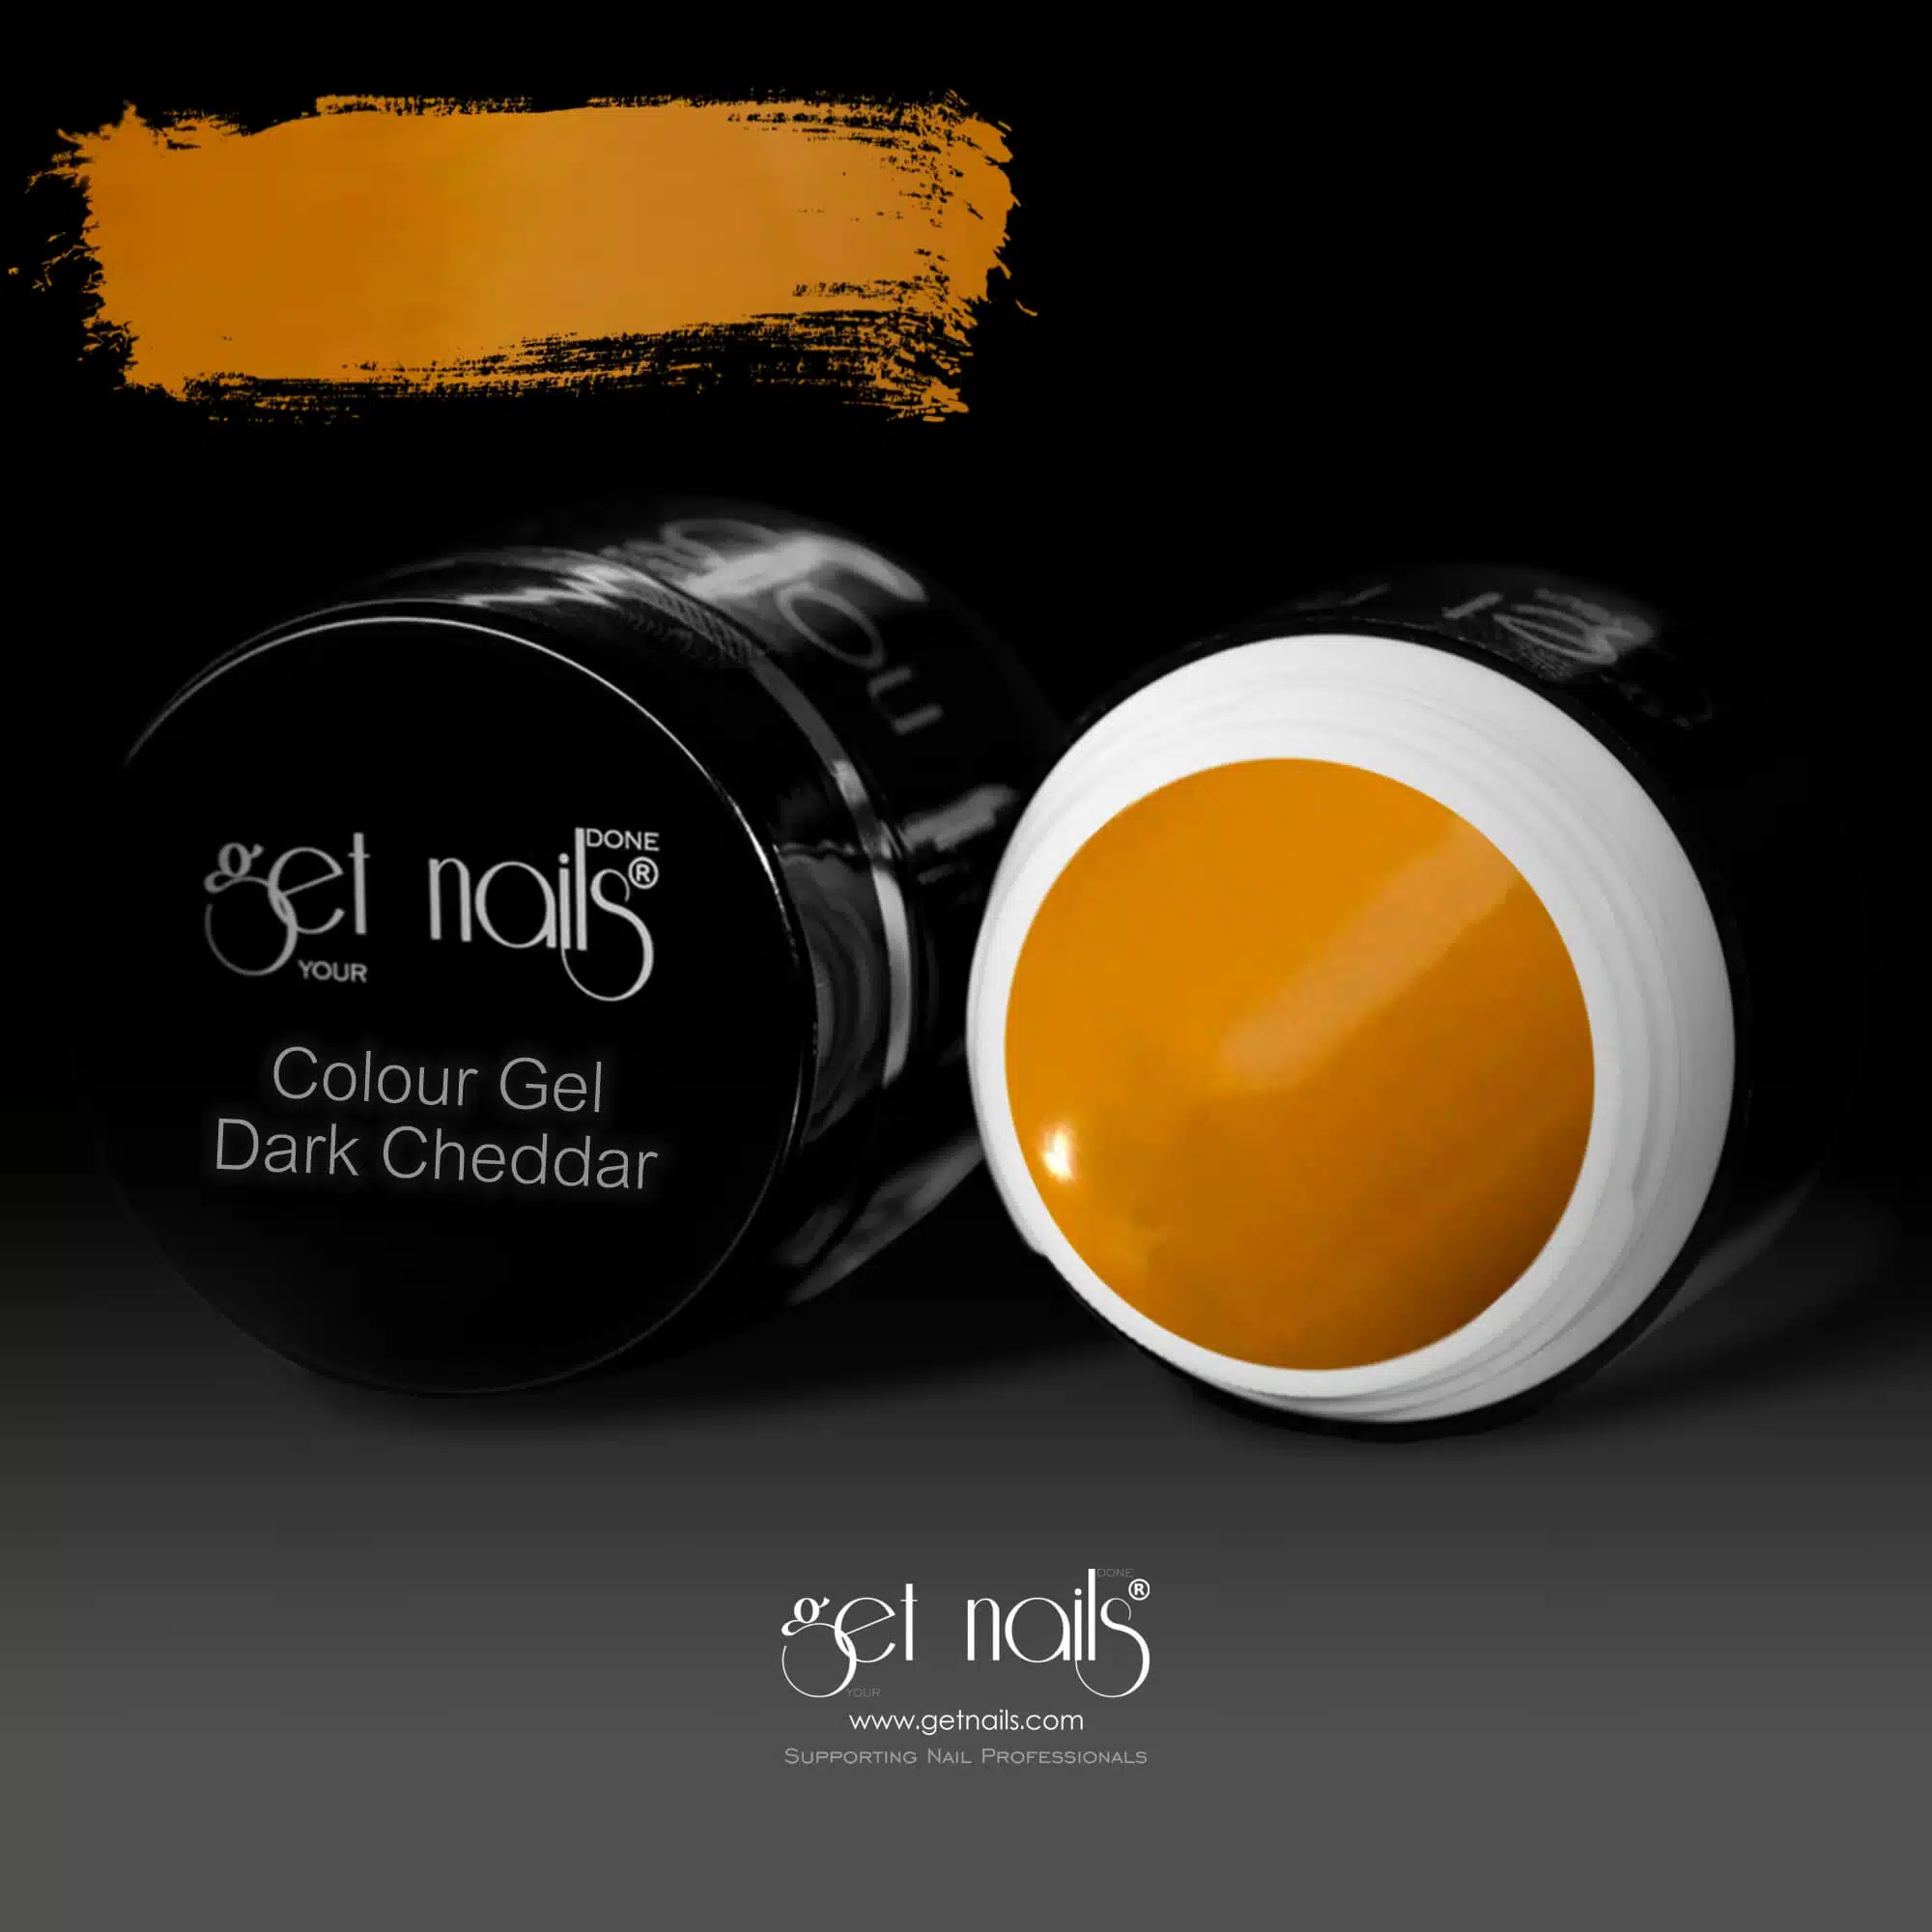 Get Nails Austria - Colour Gel Dark Cheddar 5g